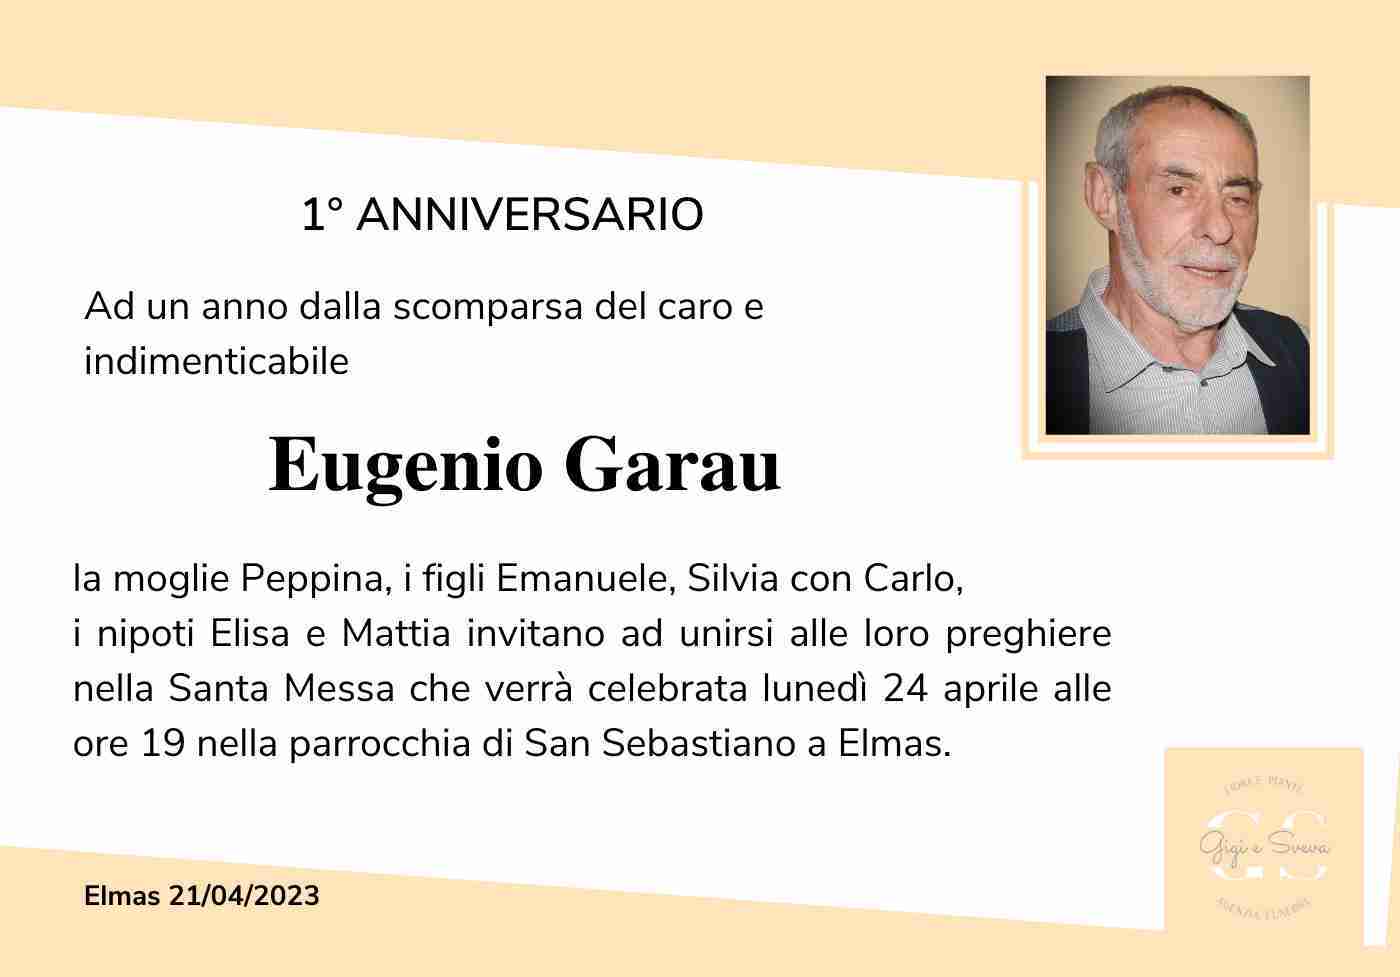 Eugenio Garau